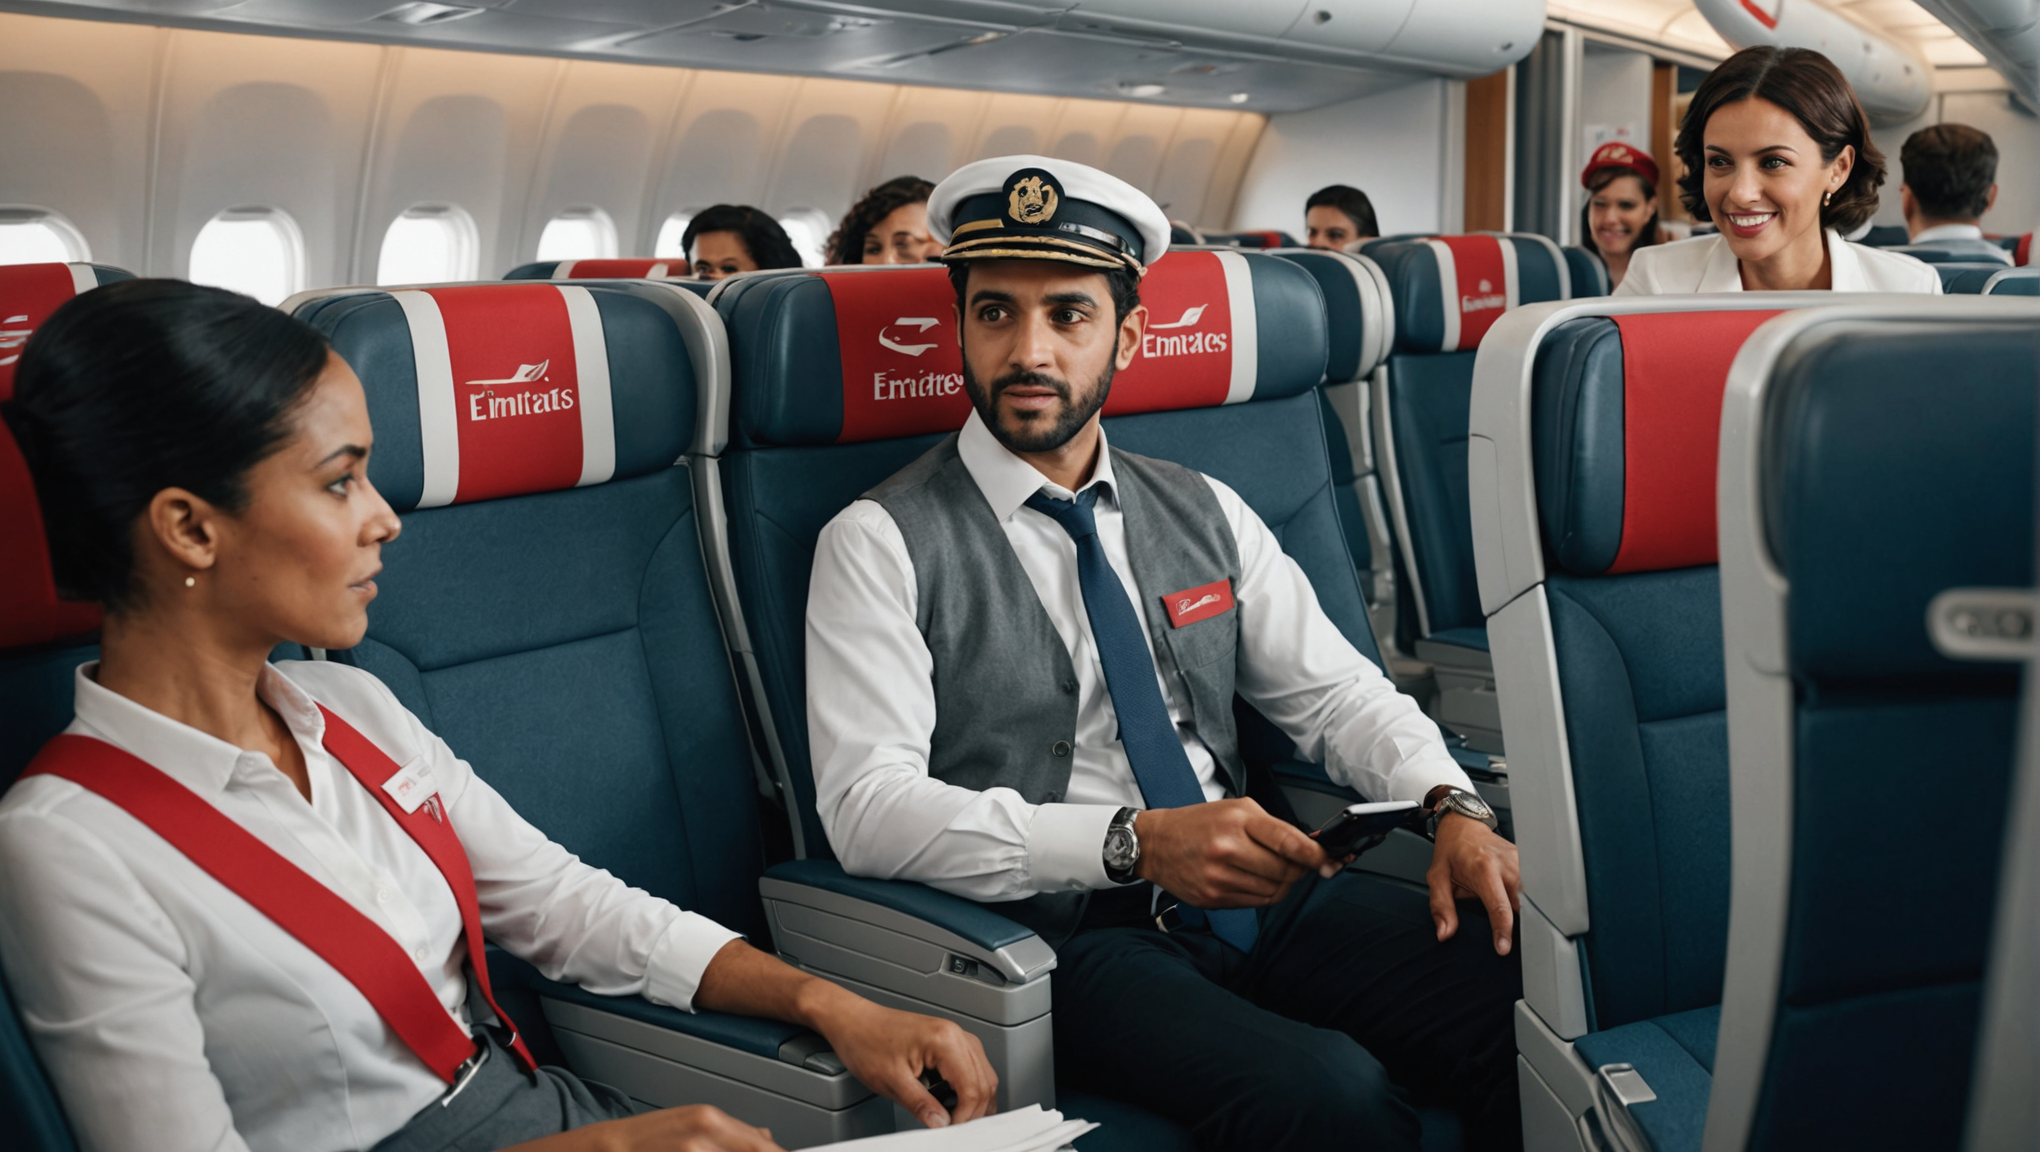 découvrez la nouvelle approche franche d'emirates dans sa vidéo de sécurité, en demandant aux passagers de garder leur ceinture attachée malgré les turbulences.